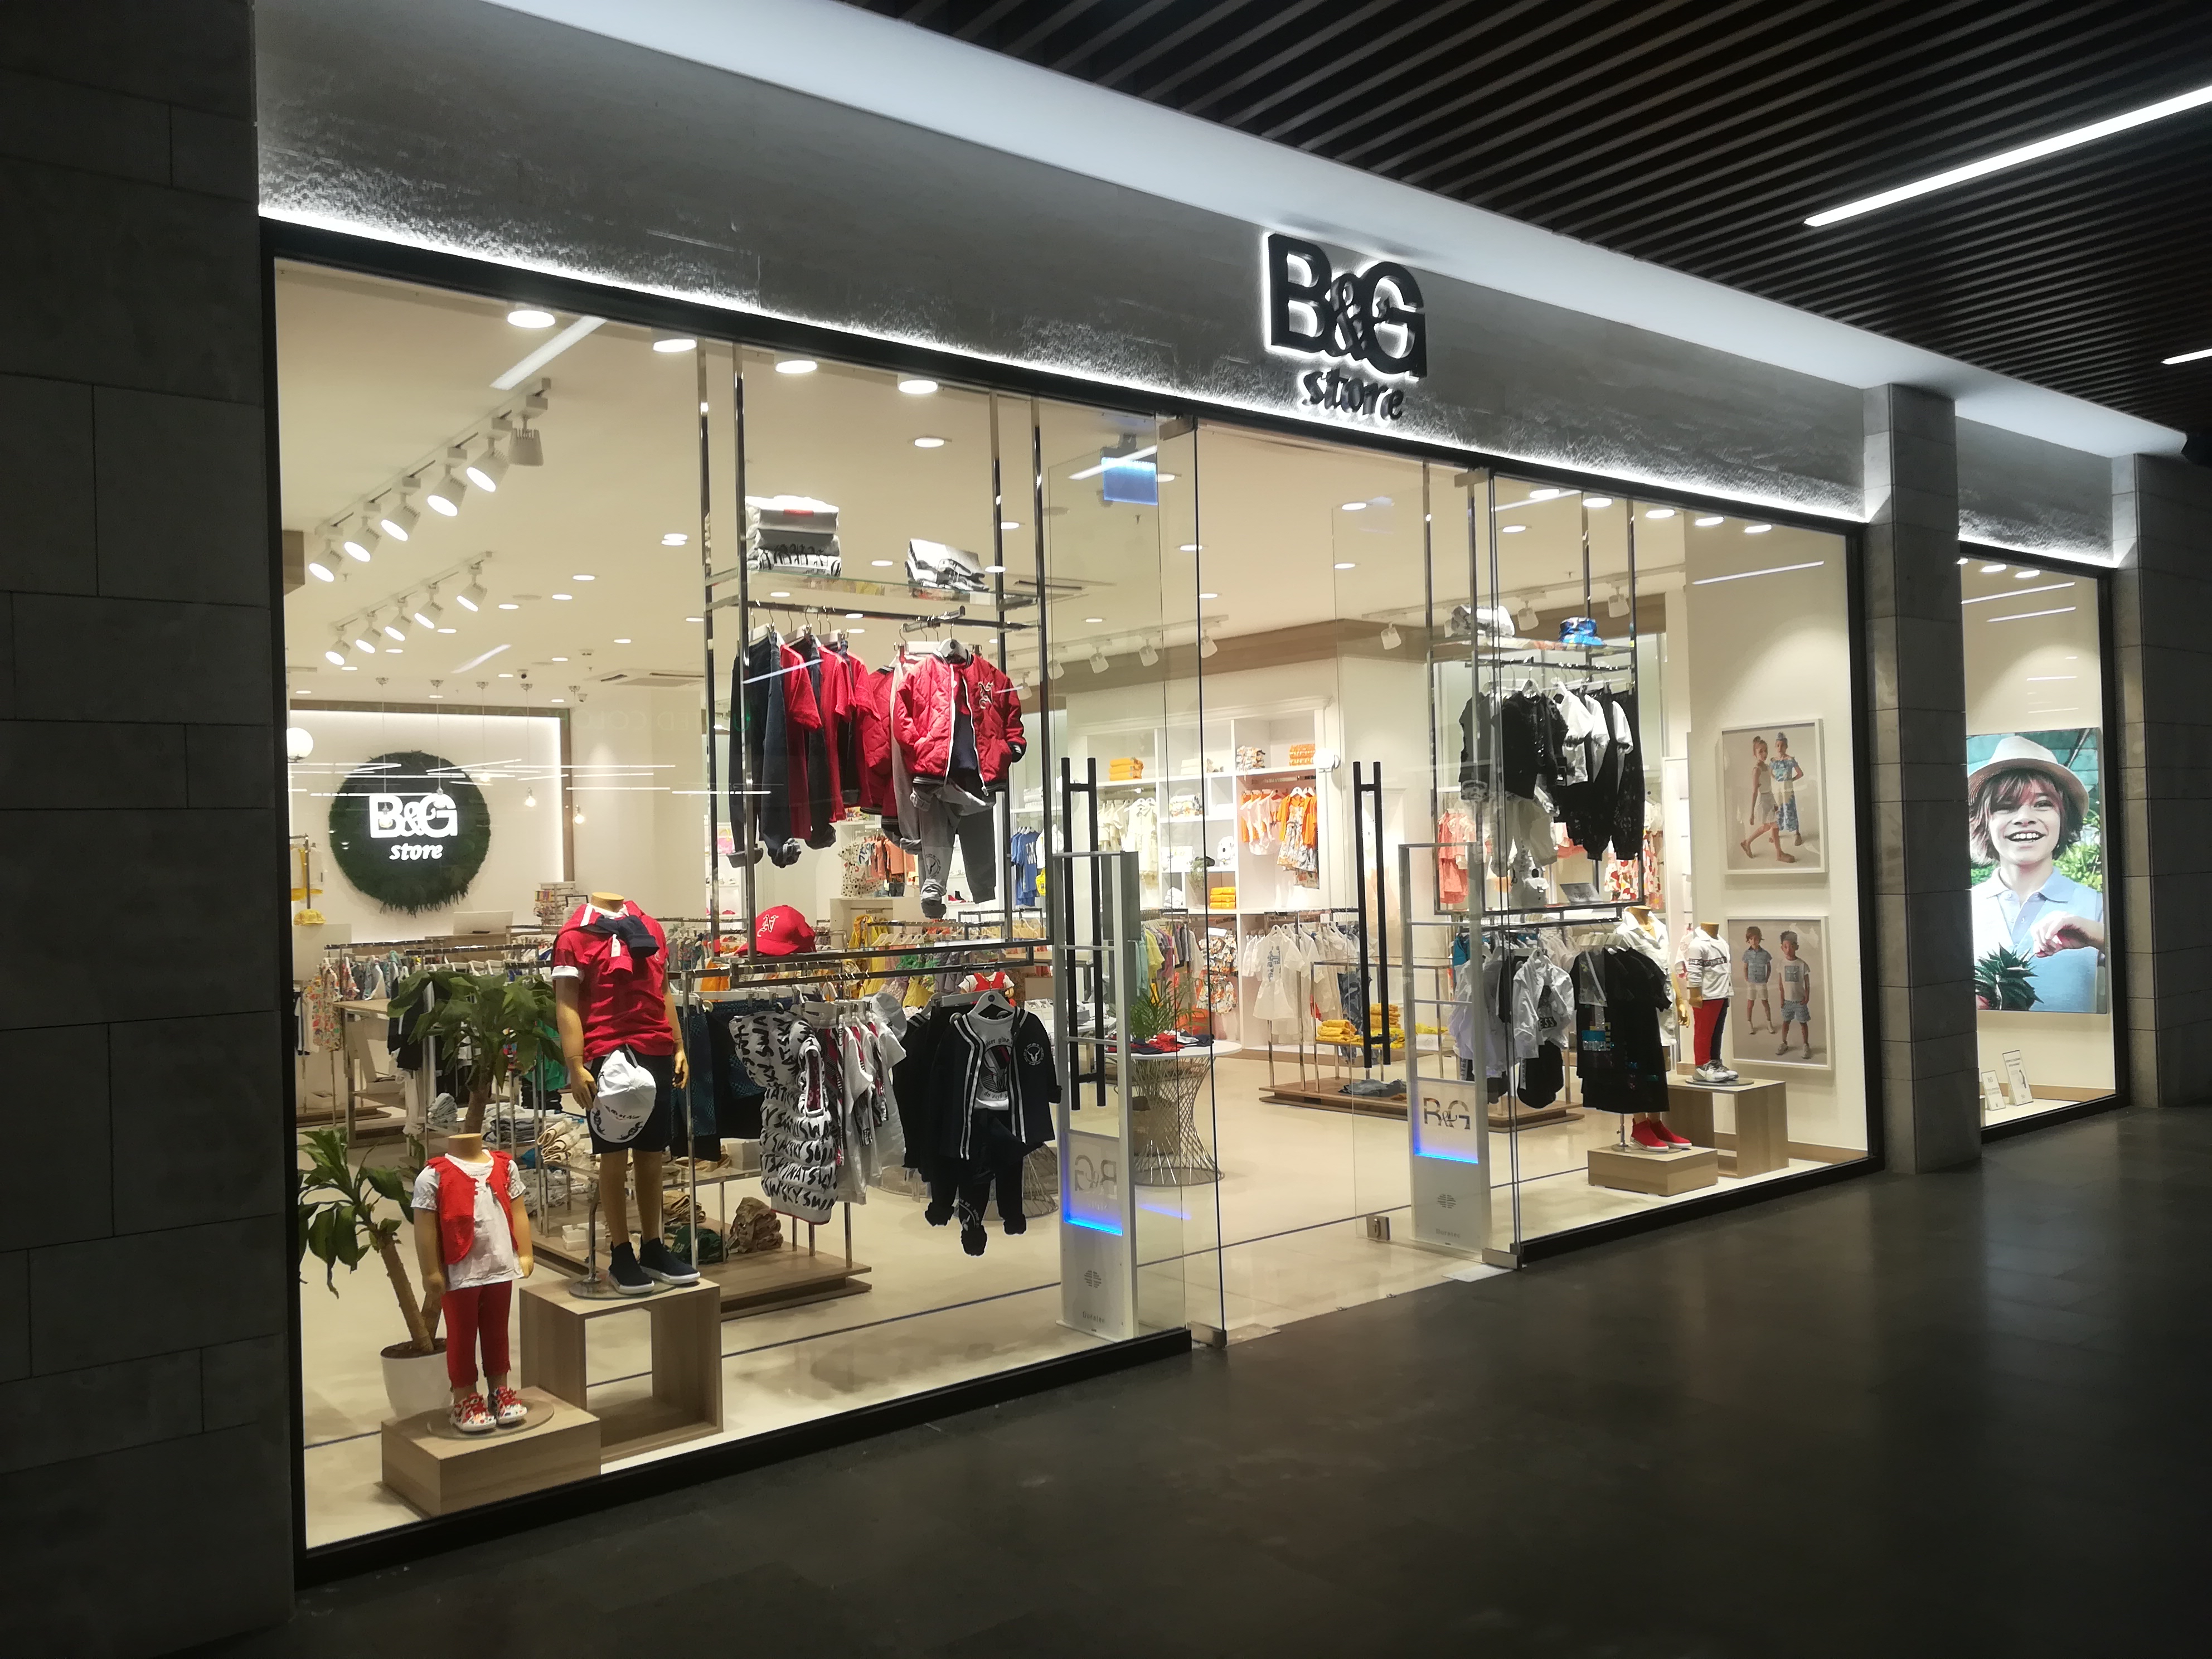 B&G Store - 51